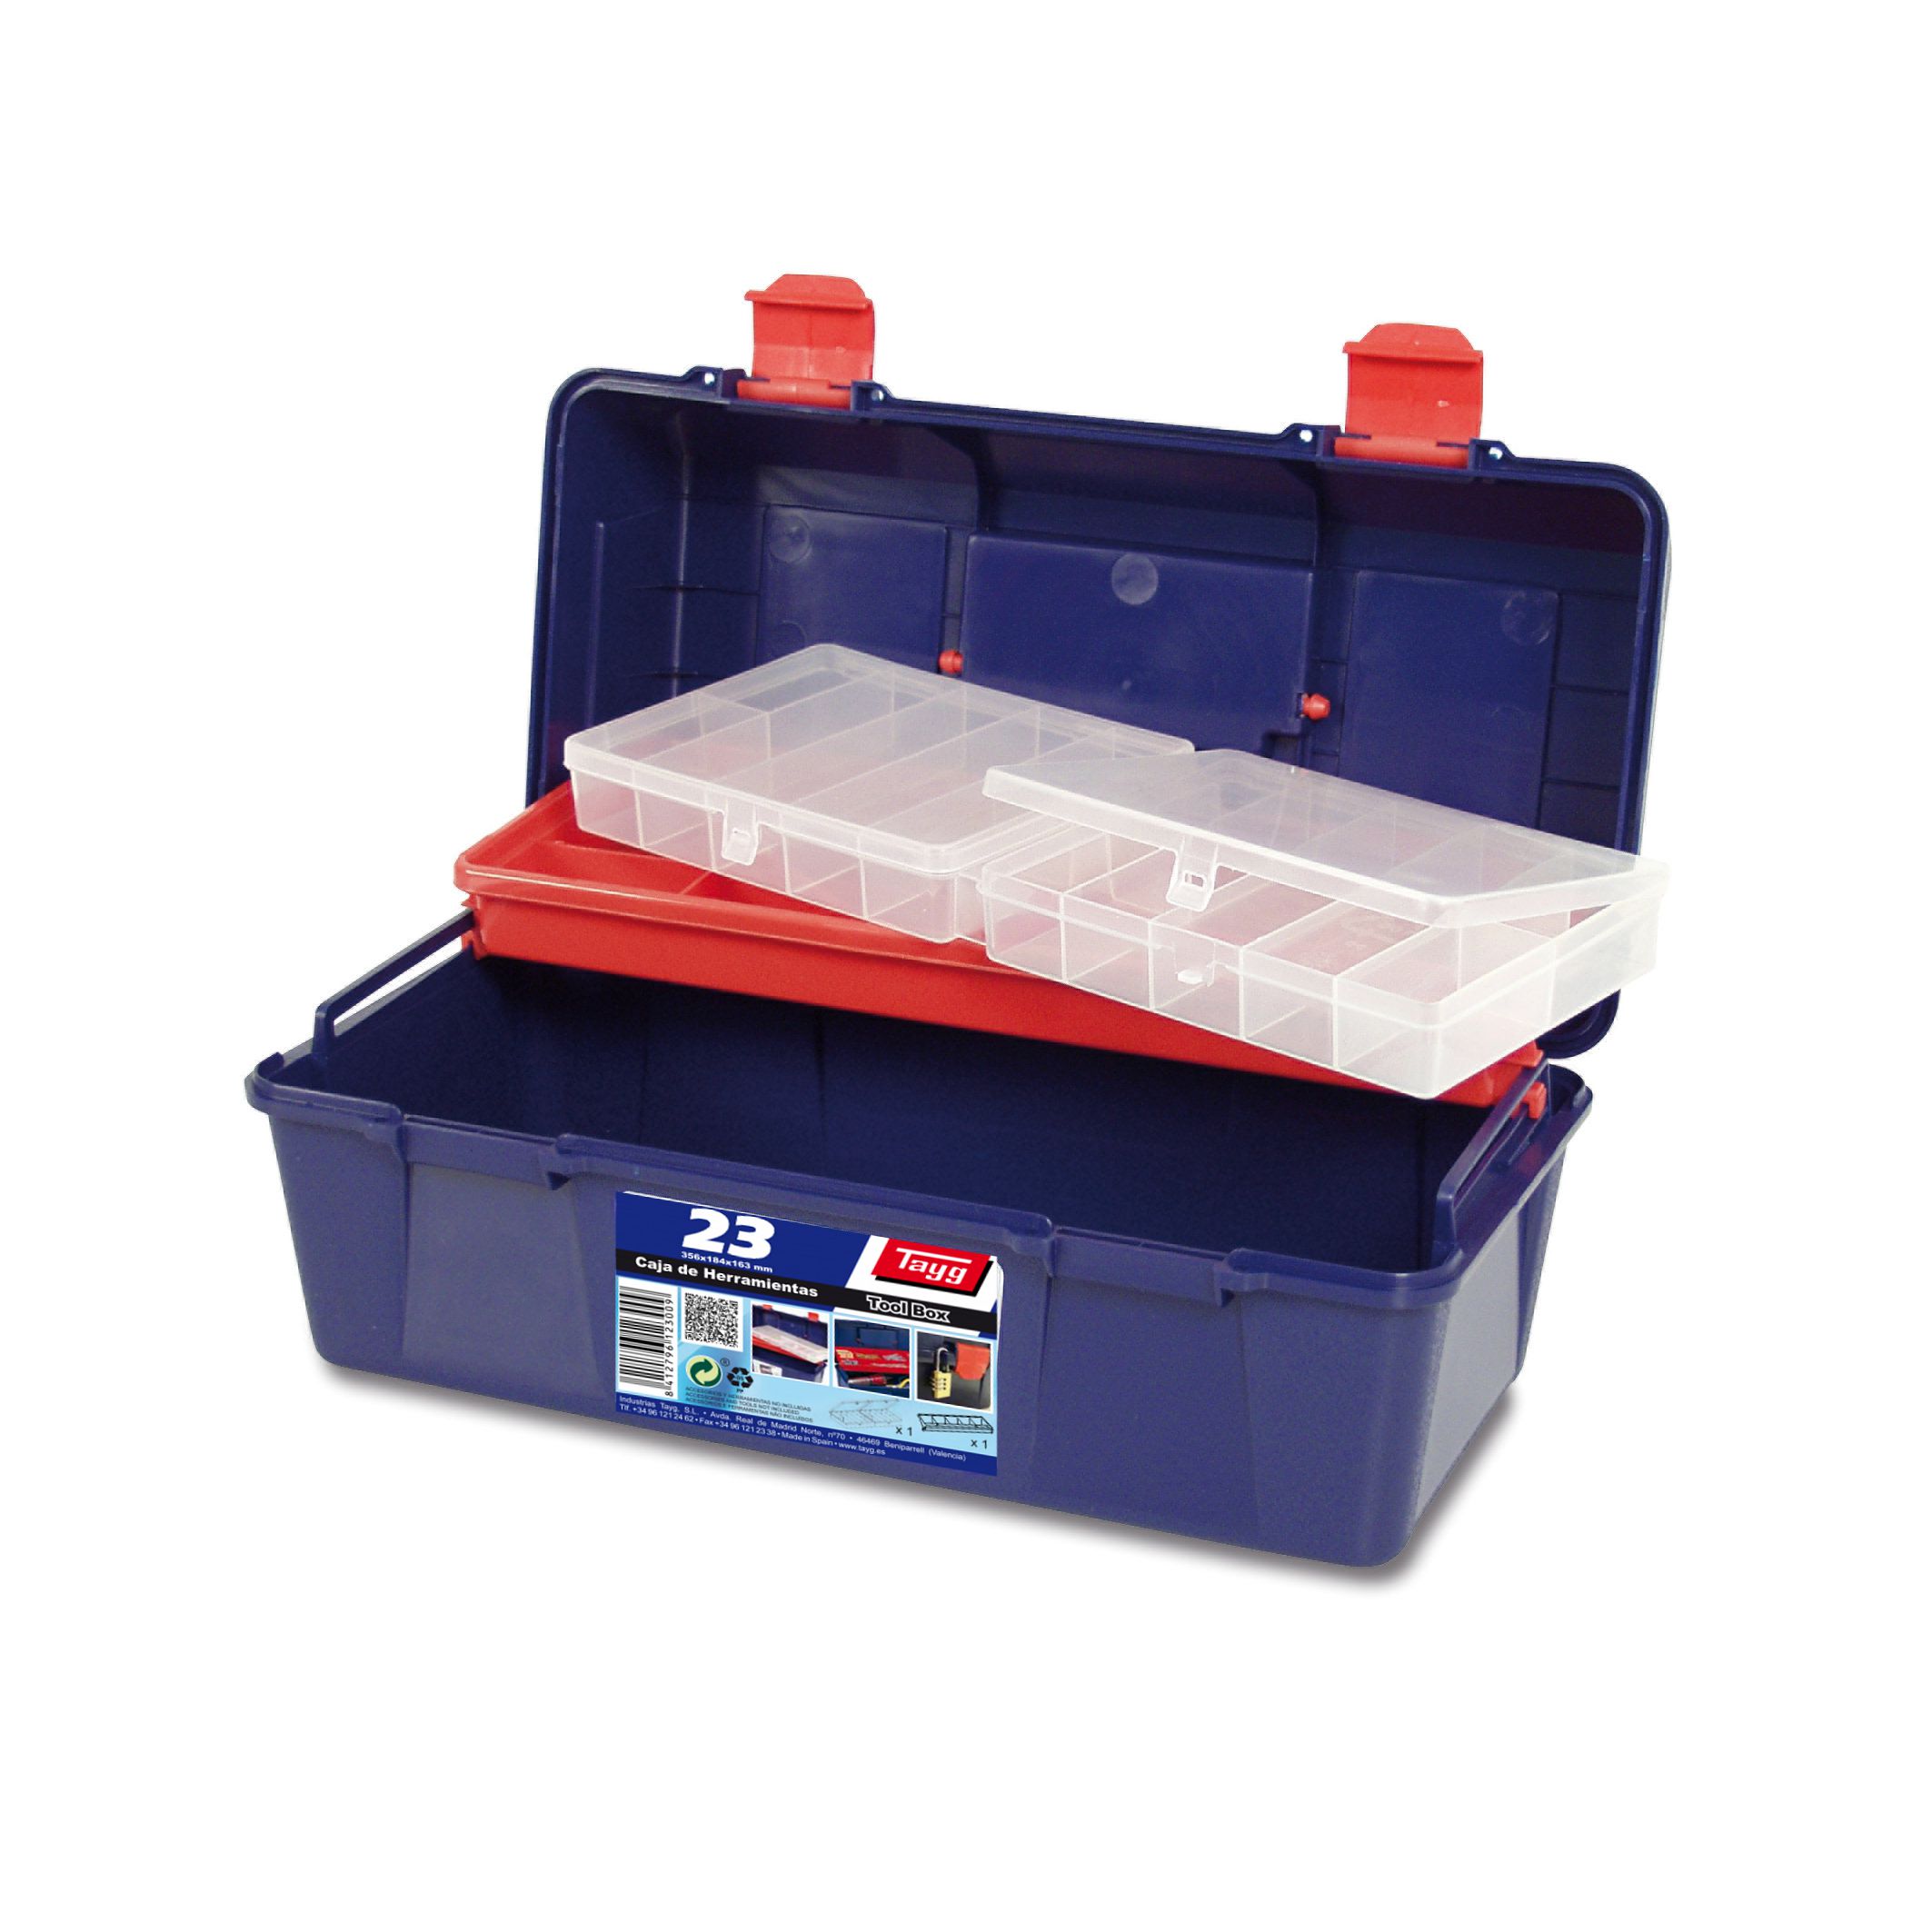 Ящик пластиковий для інструментів Tayg Box 23 Caja htas, з 2 органайзерами, 35,6х18,4х16,3 см, синій (123009) - фото 5